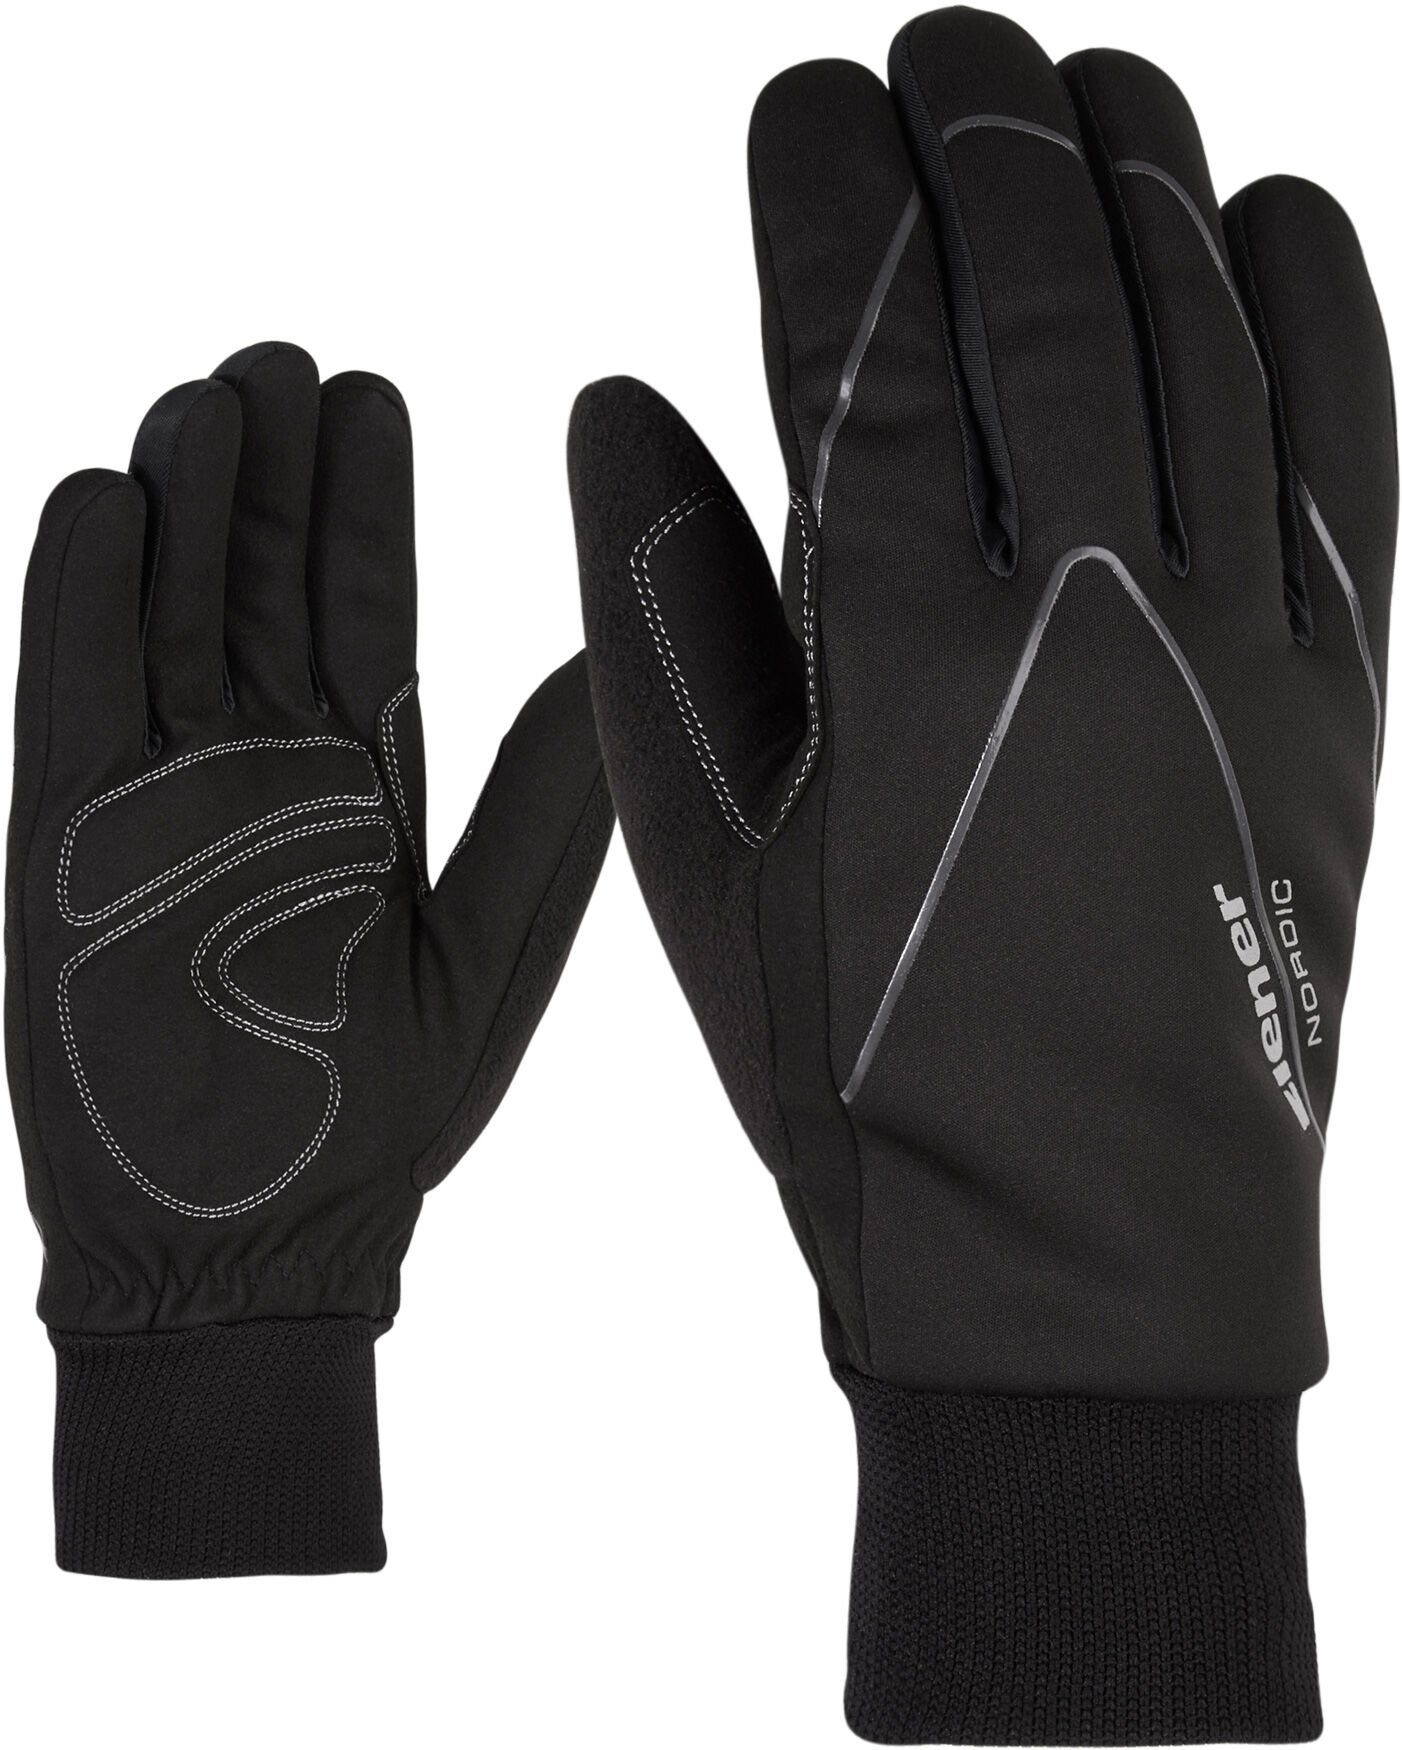 Ziener Unico Nordic Gloves